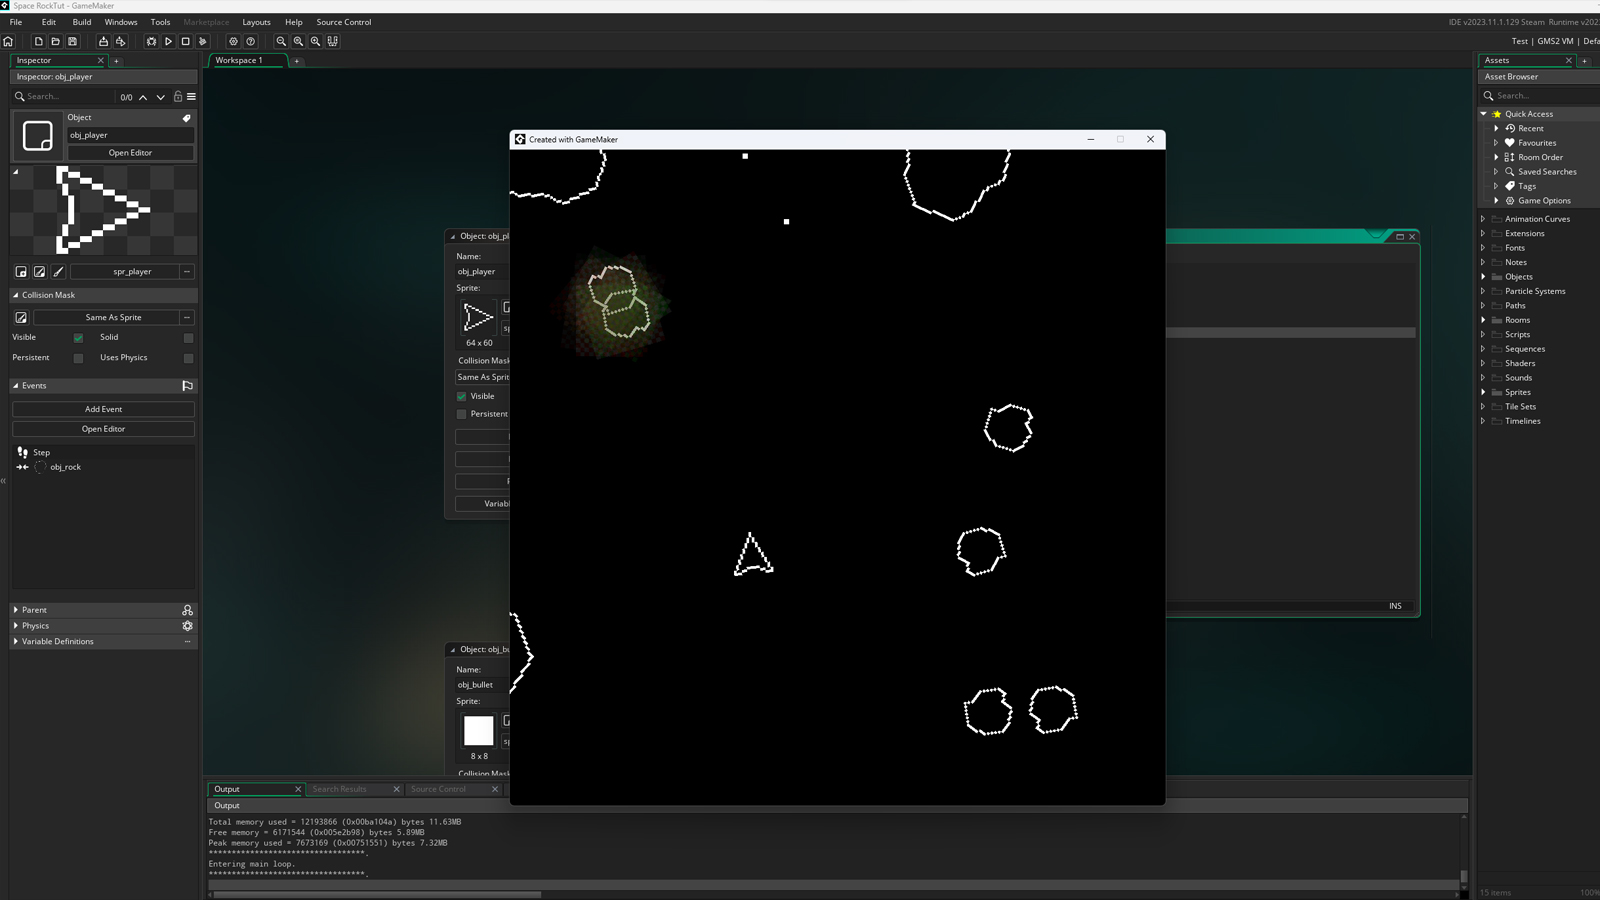 شبیه سازی سیارک در حال اجرا در Game Maker.